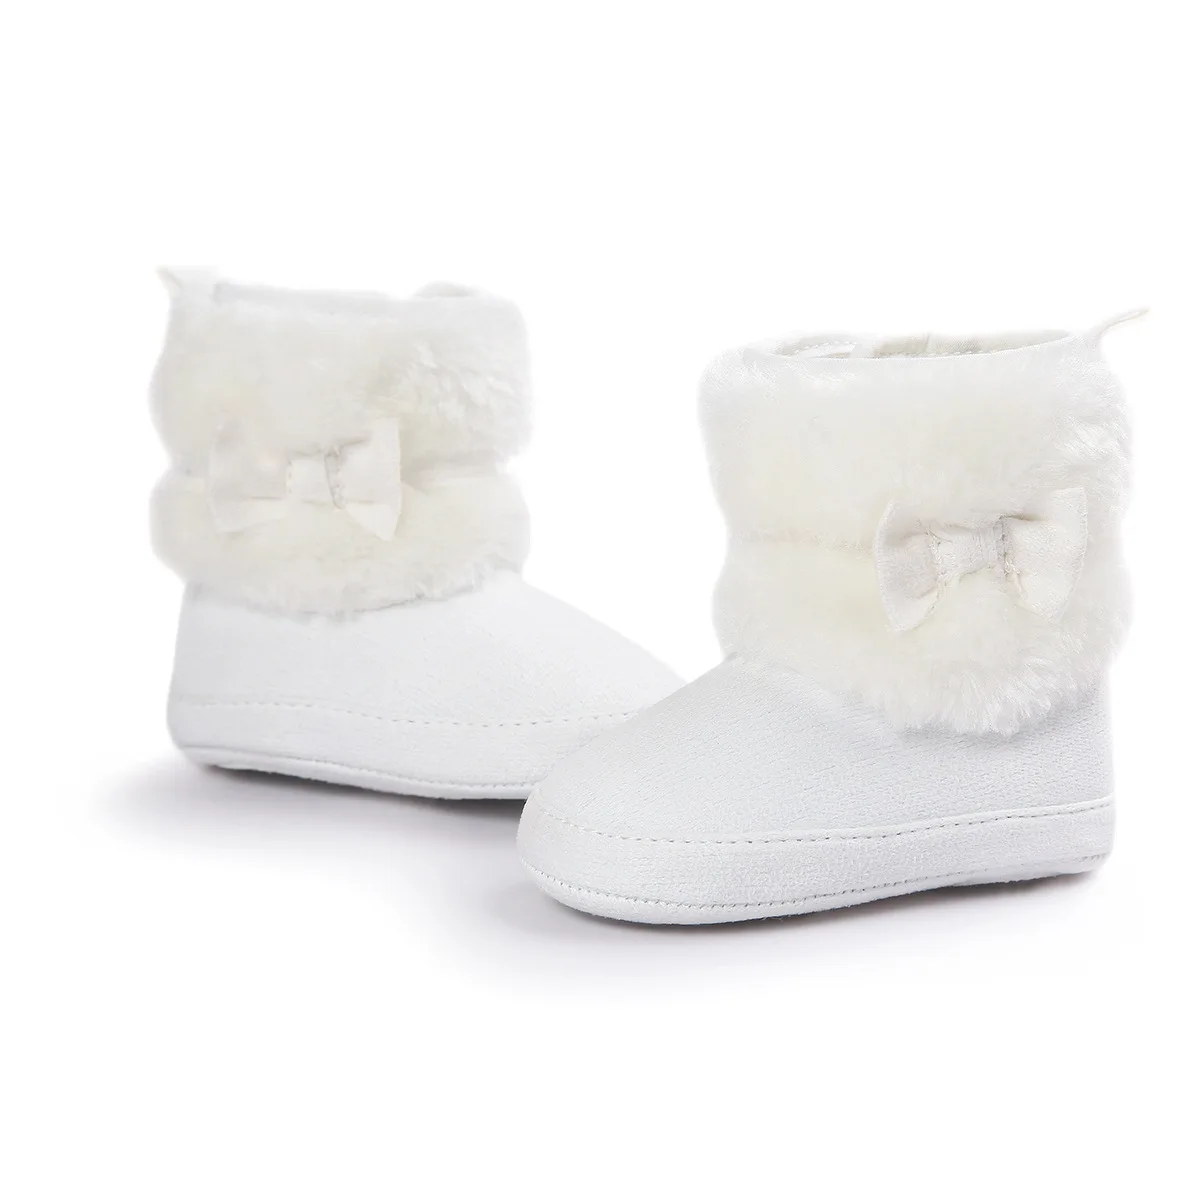 Модные зимние теплые ботинки для малышей с бантом-бабочкой на мягкой нескользящей подошве, обувь для маленьких девочек